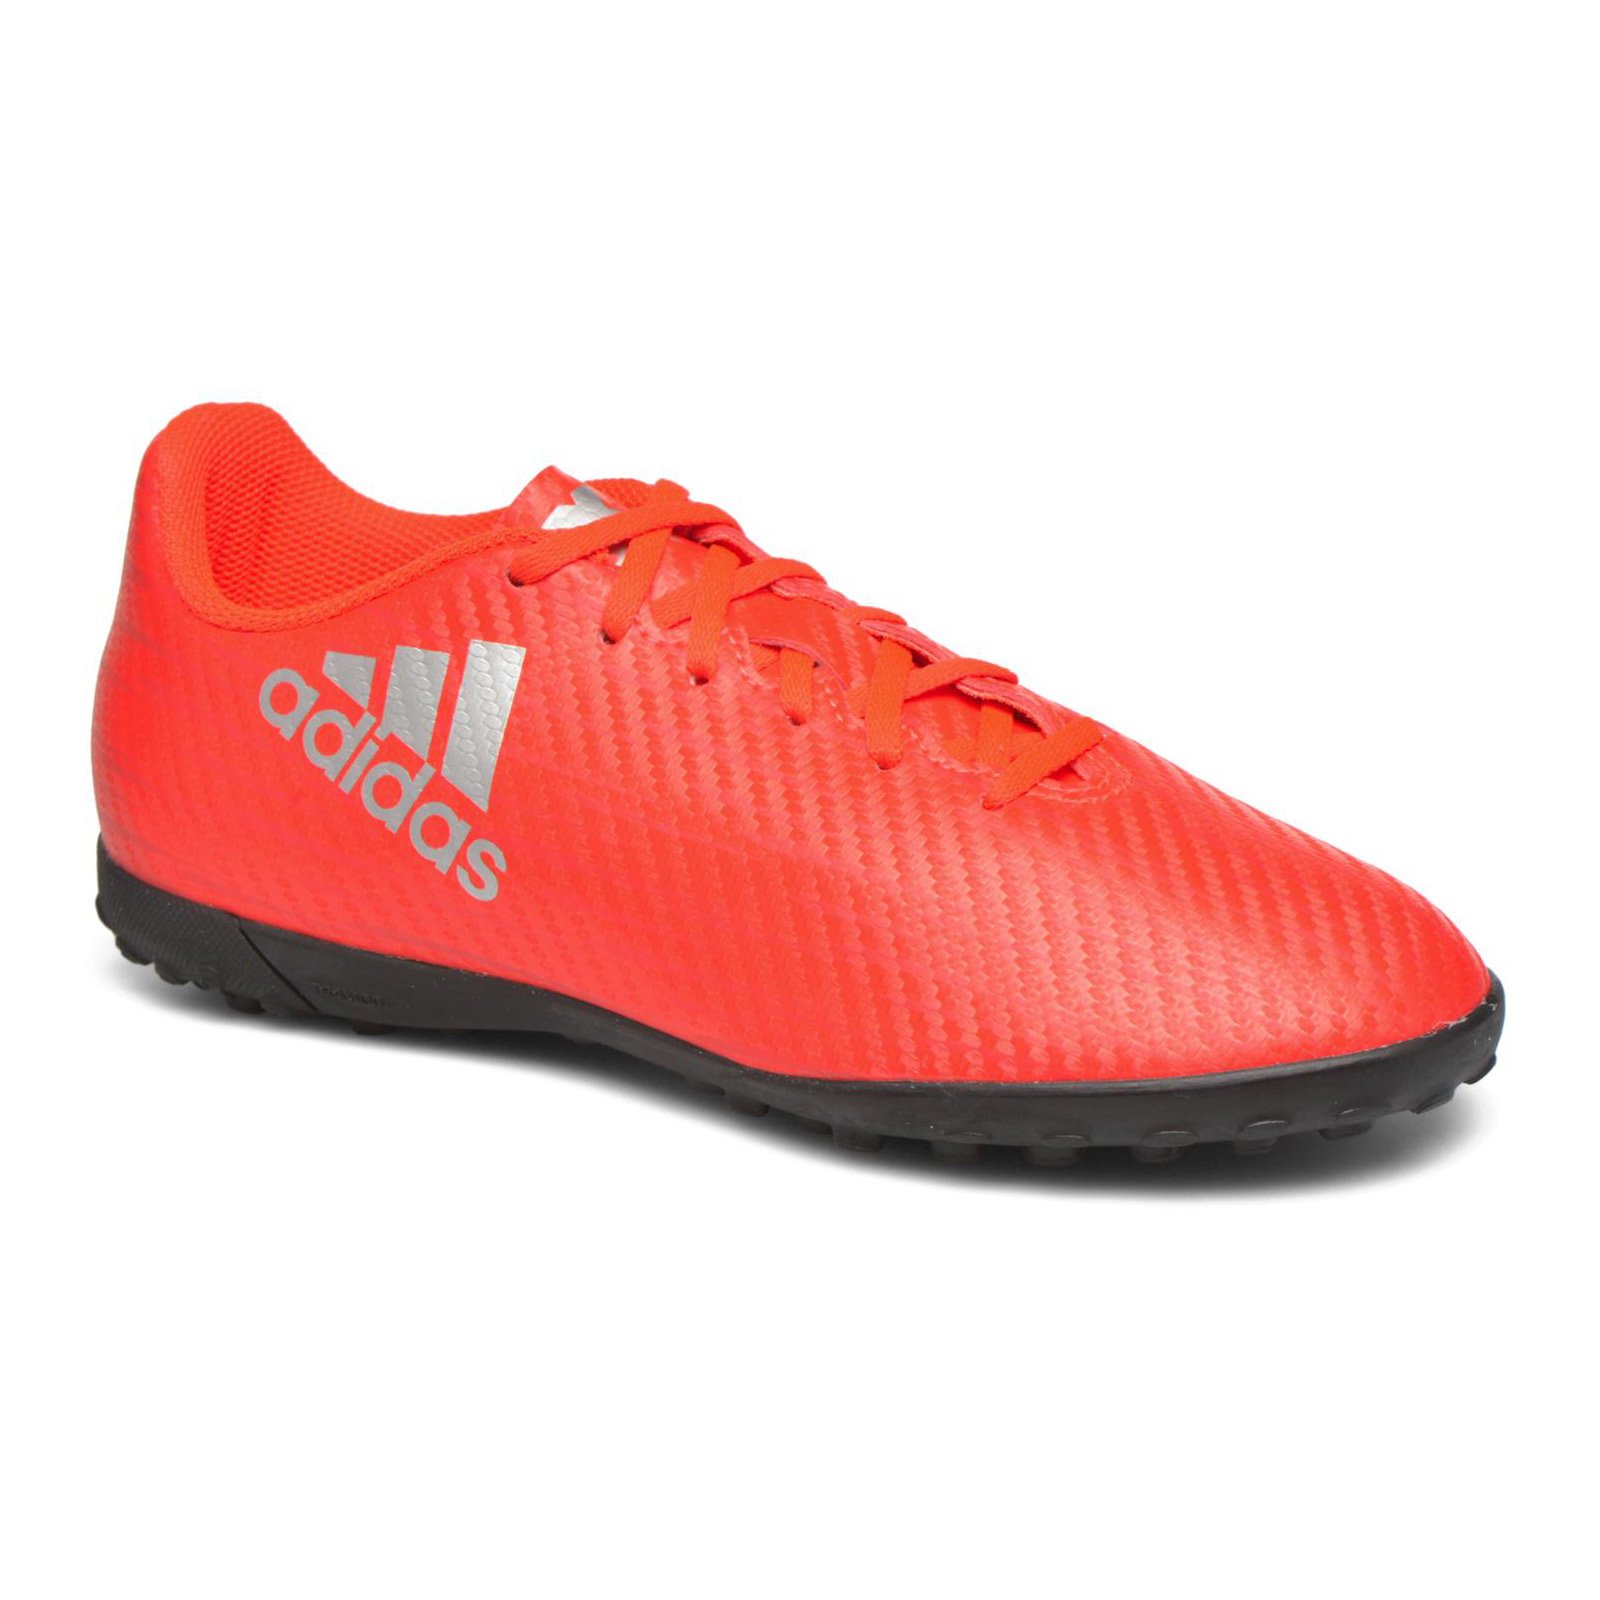 Extranjero Prescribir Inspirar adidas X 16.4 TF J S75710 Детски футболни обувки - ShopSector.com